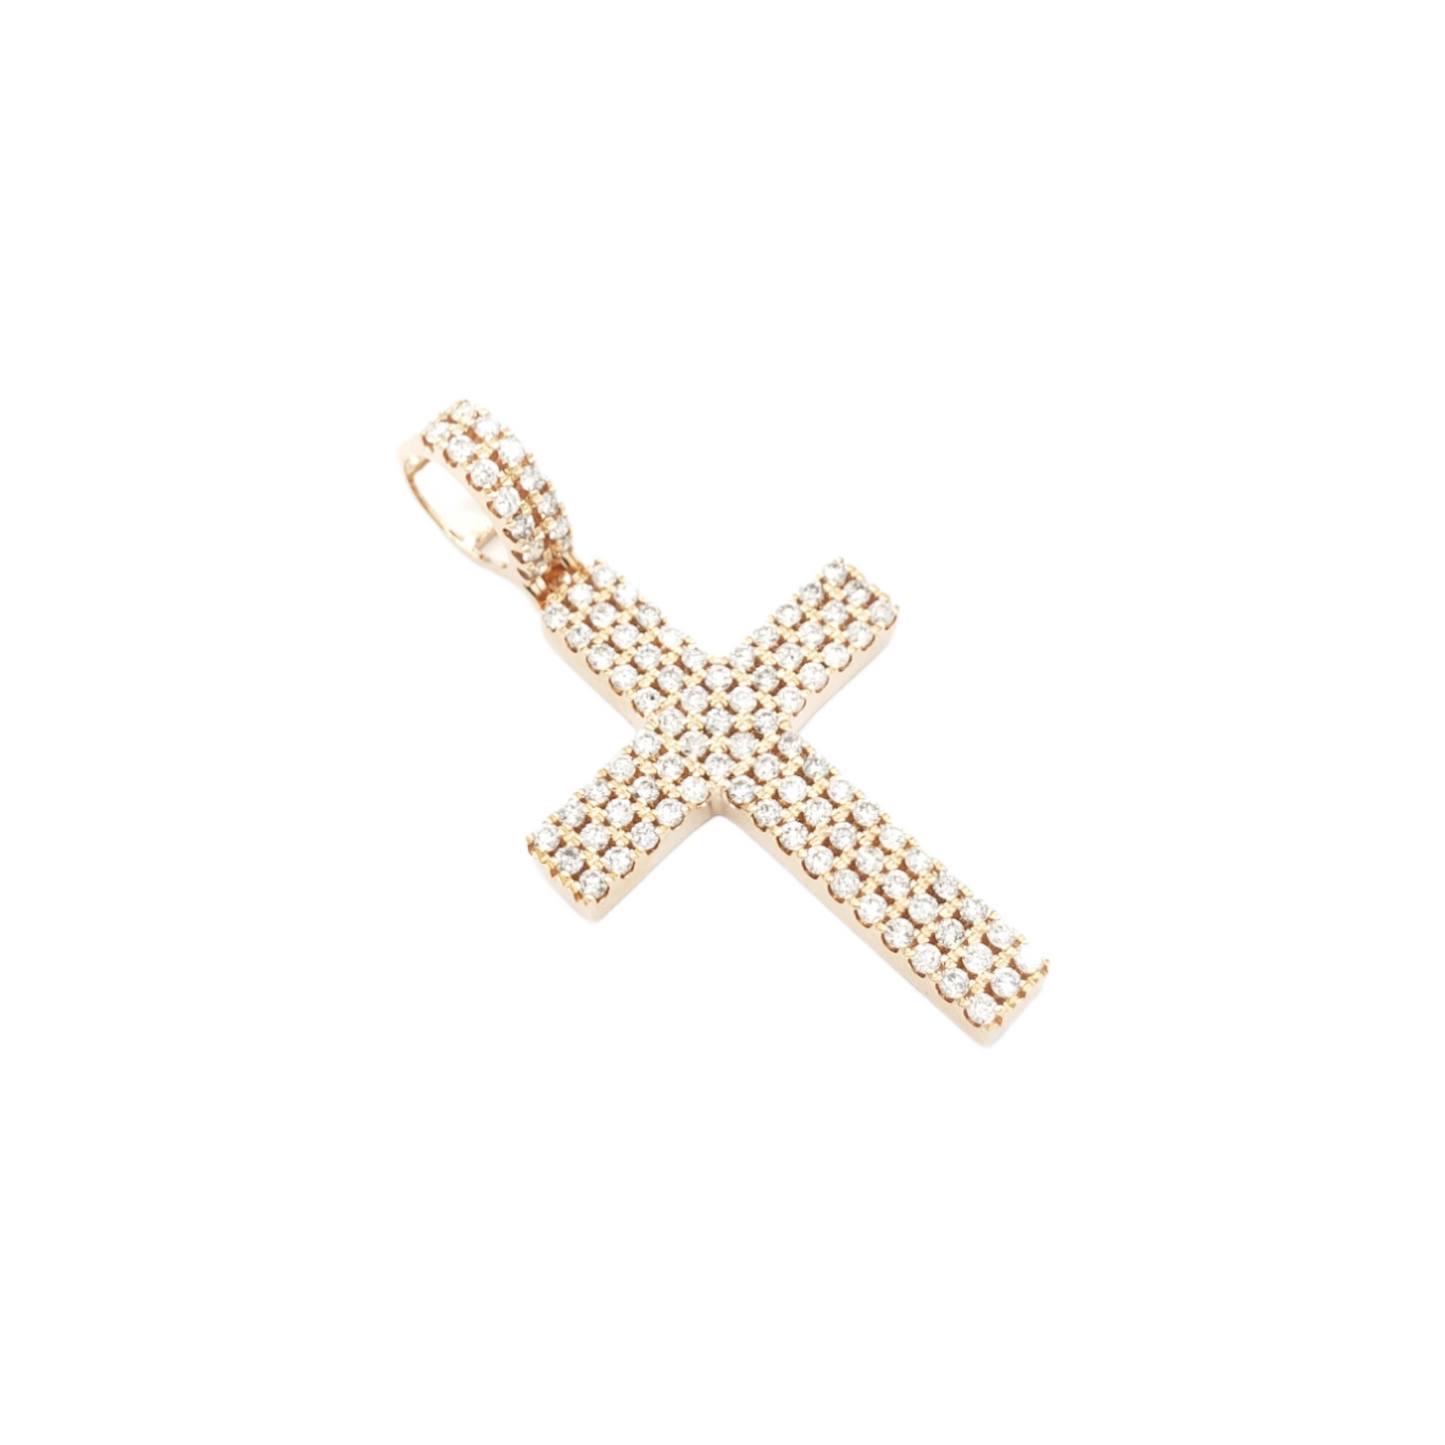 14k Three Row Diamond Cross With 1.69 Carats Of Diamonds #14312